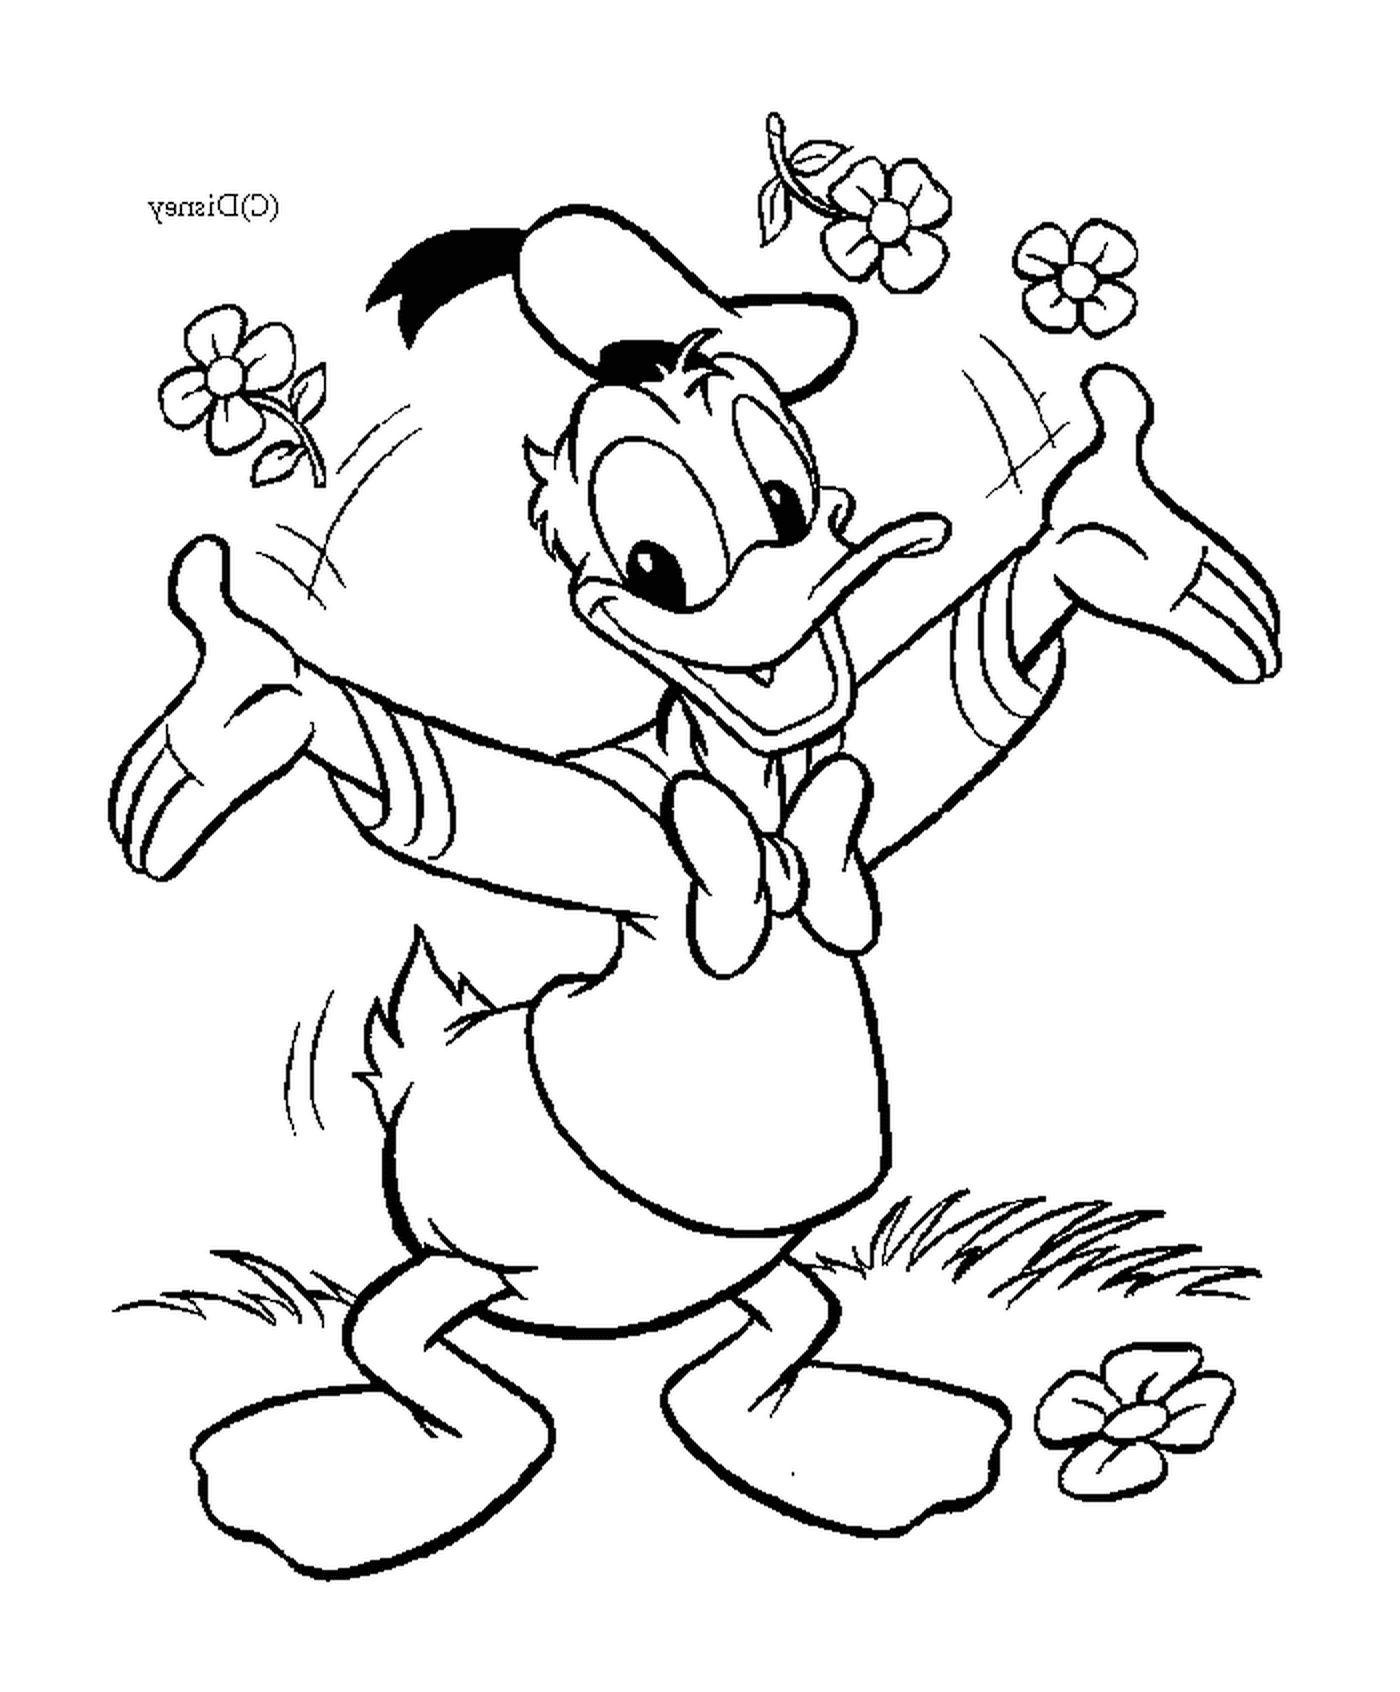  Donald 提供有感情的鲜花 